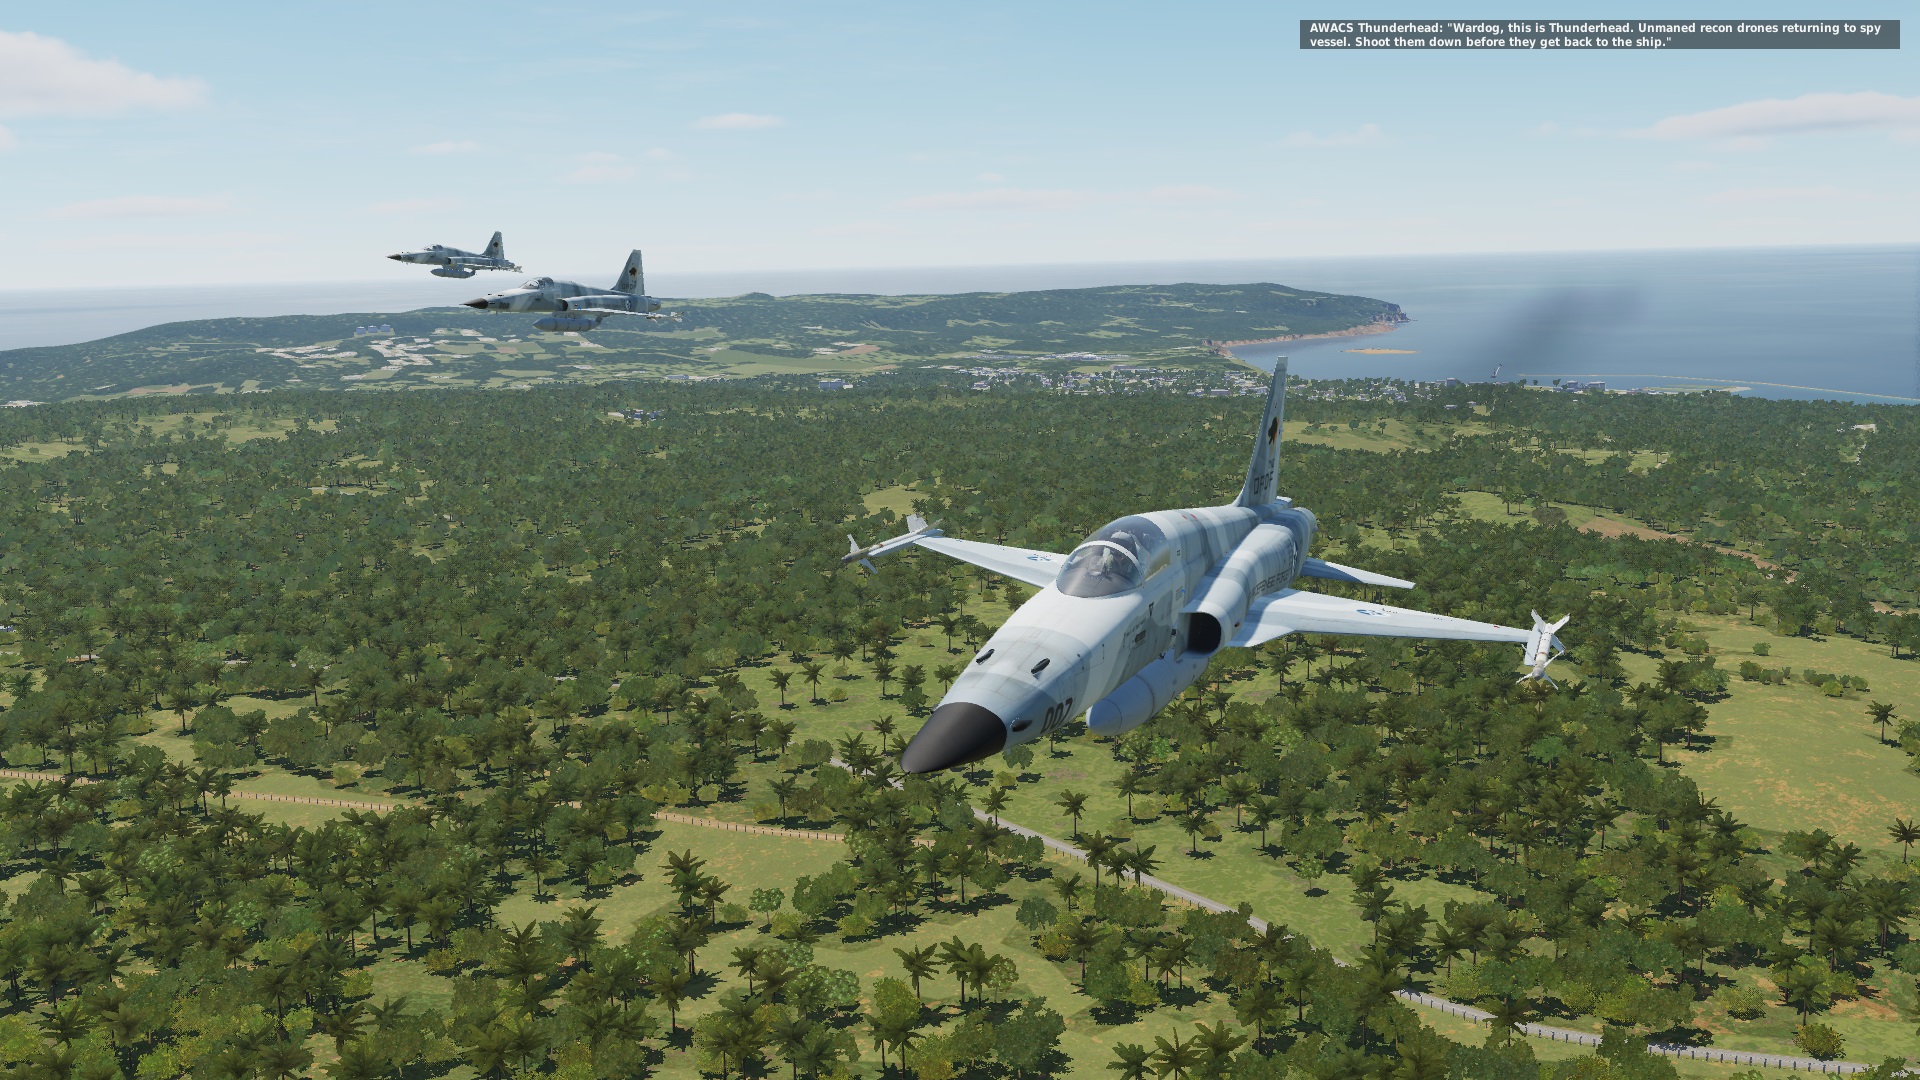 Ace Combat 5 - Mission 02 - "Open War" - For Belsimtek's F-5E Tiger II - Updated